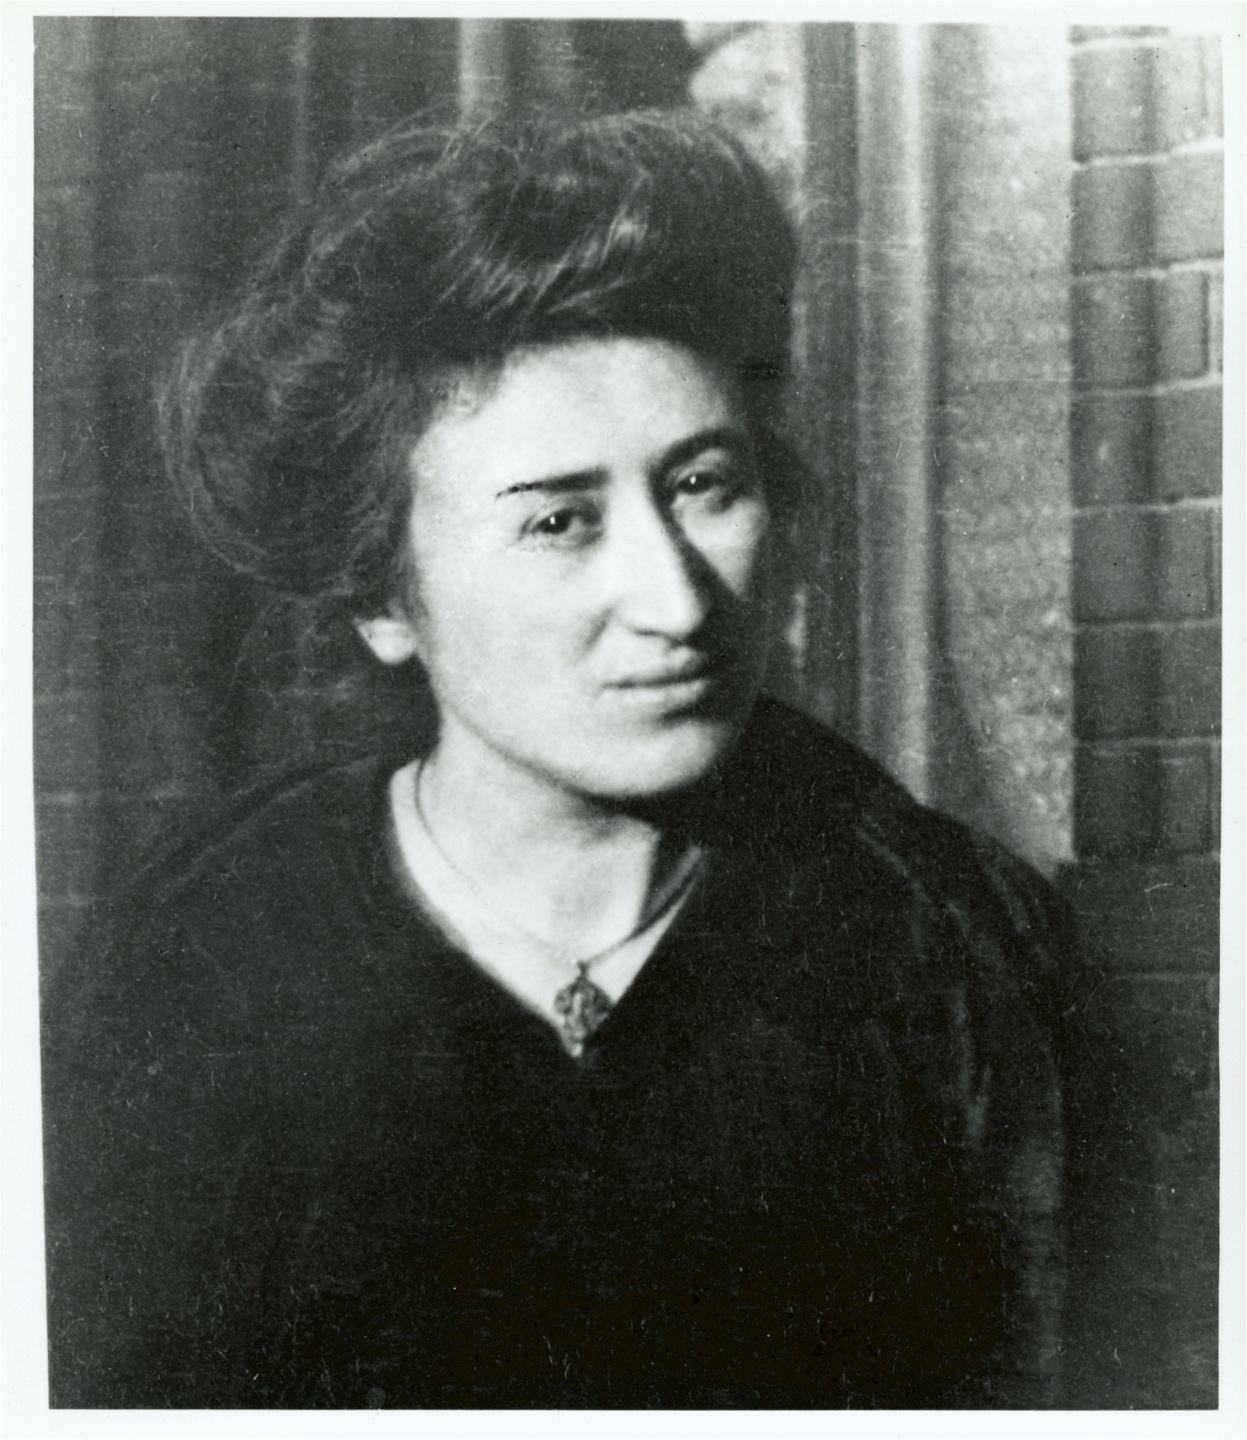 Rosa Luxemburg, född i nuvarande Polen 1871, bildade tillsammans med bland andra Karl Liebknecht Spartakus­­förbundet och spelade en aktiv roll under skeendena 1918 och 1919. De mördades båda av frikårsstyrkor i Berlin 1919.